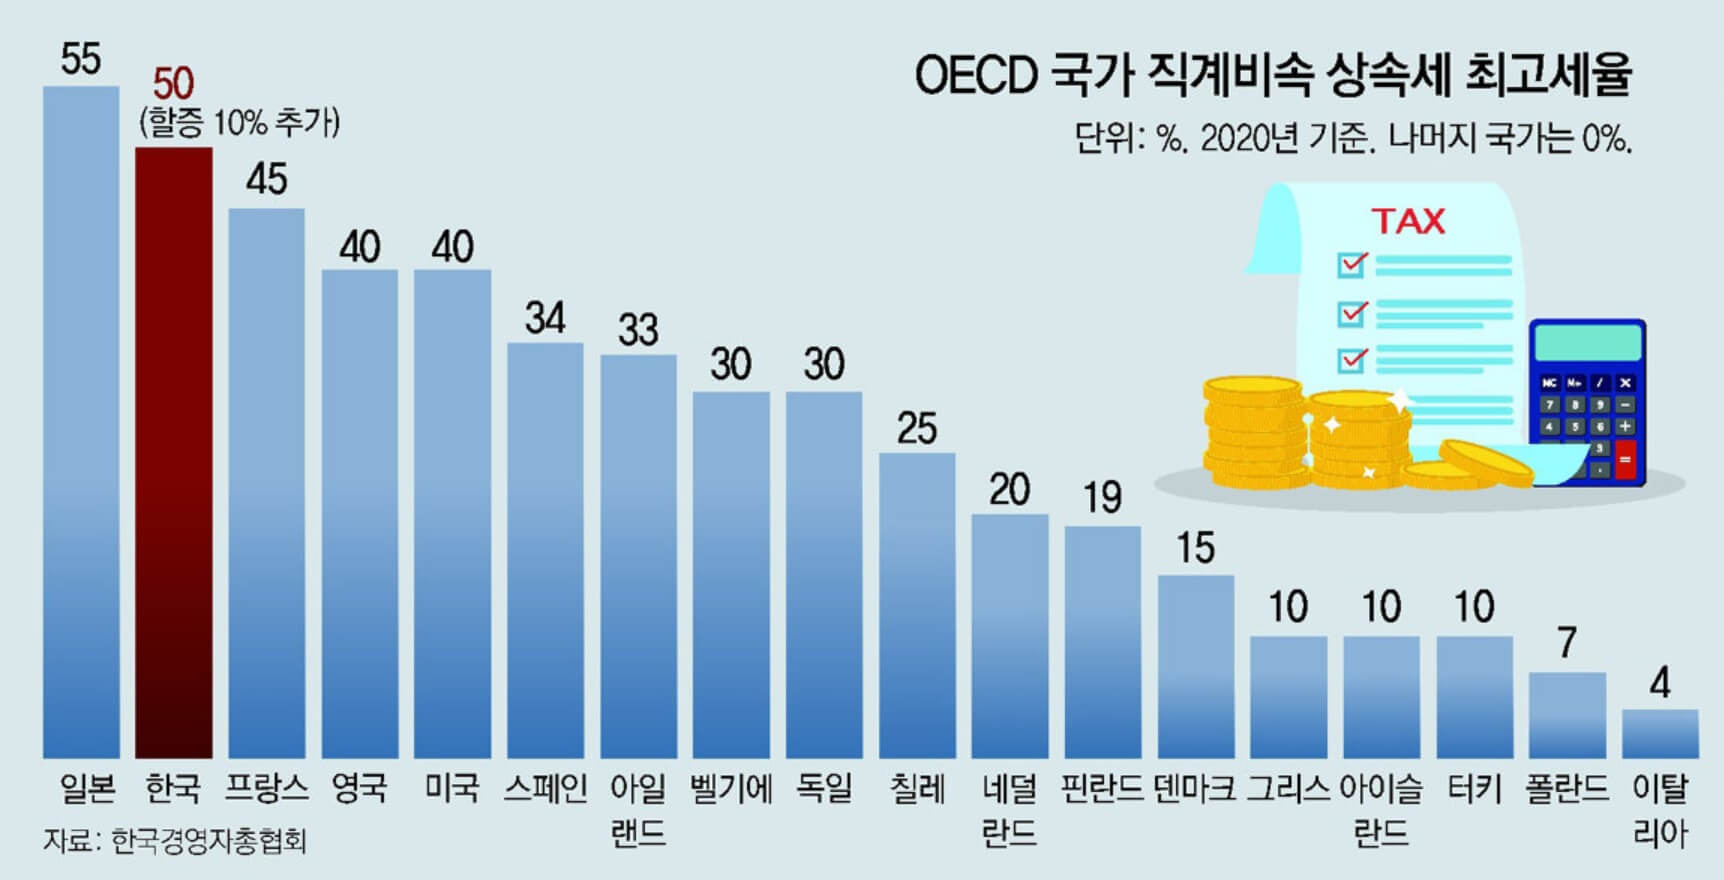 한국 OECD 상속세 순위